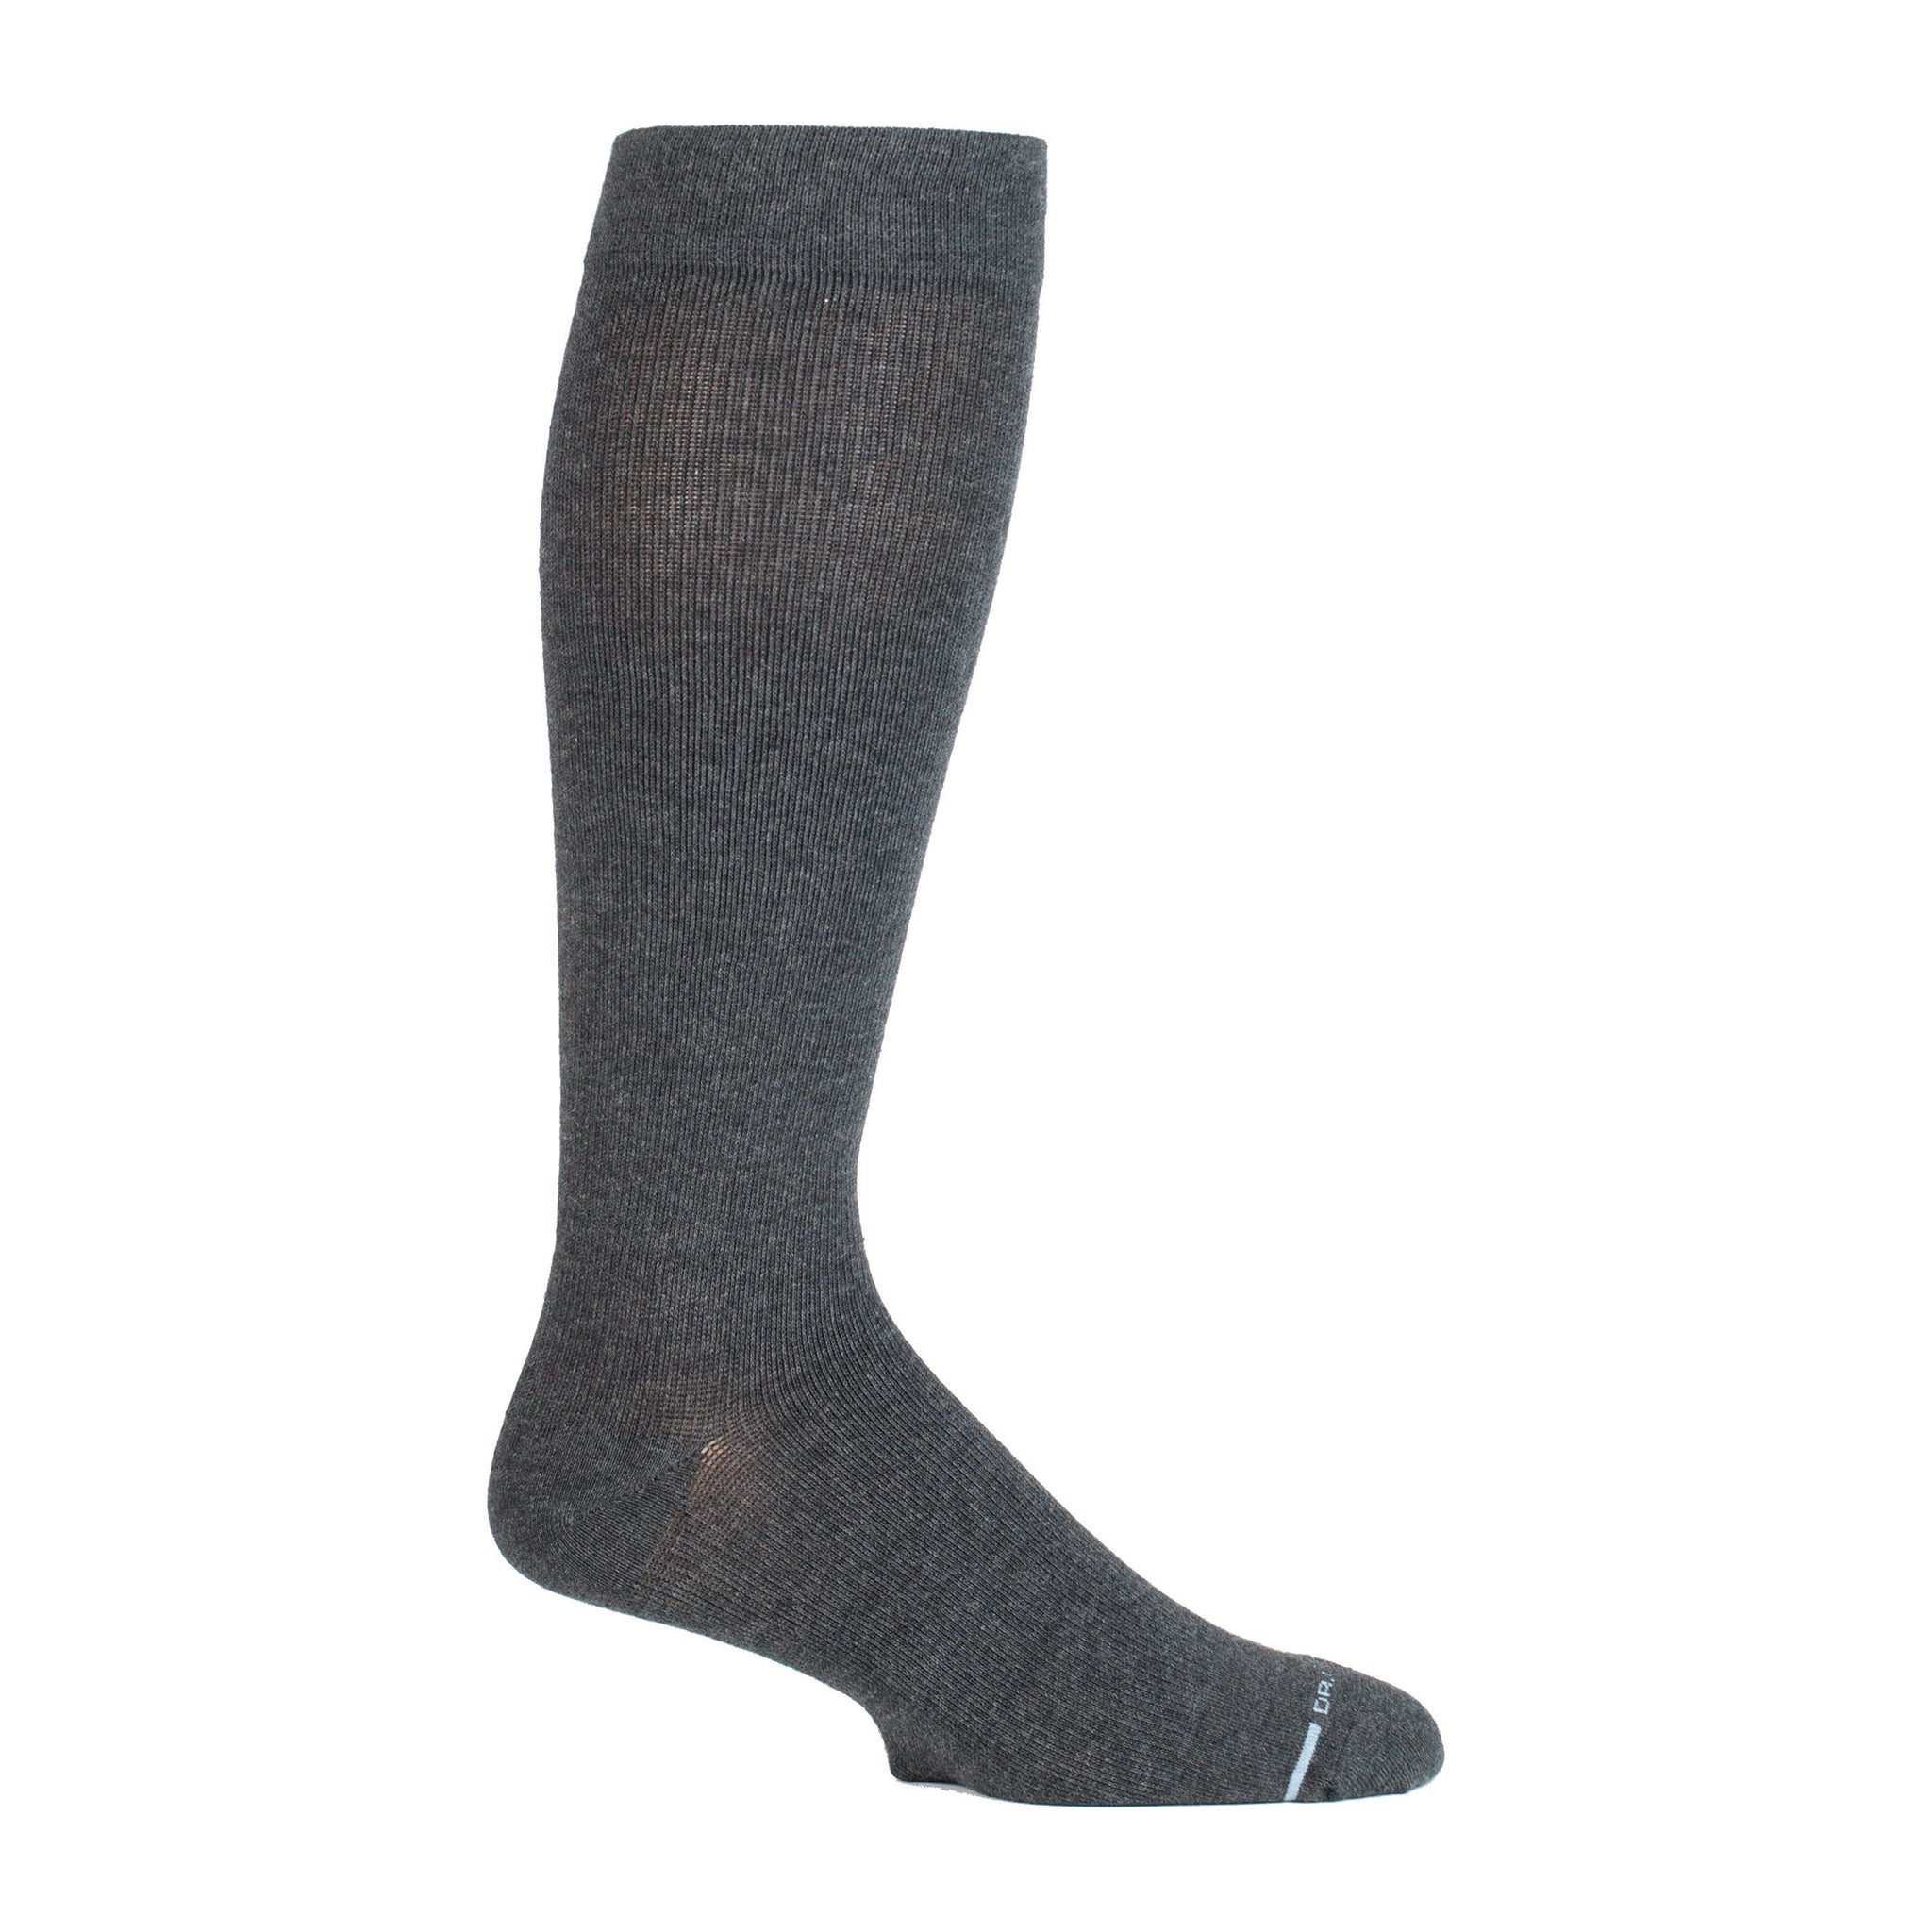 Knee-High Compression Socks For Men, Dr. Motion